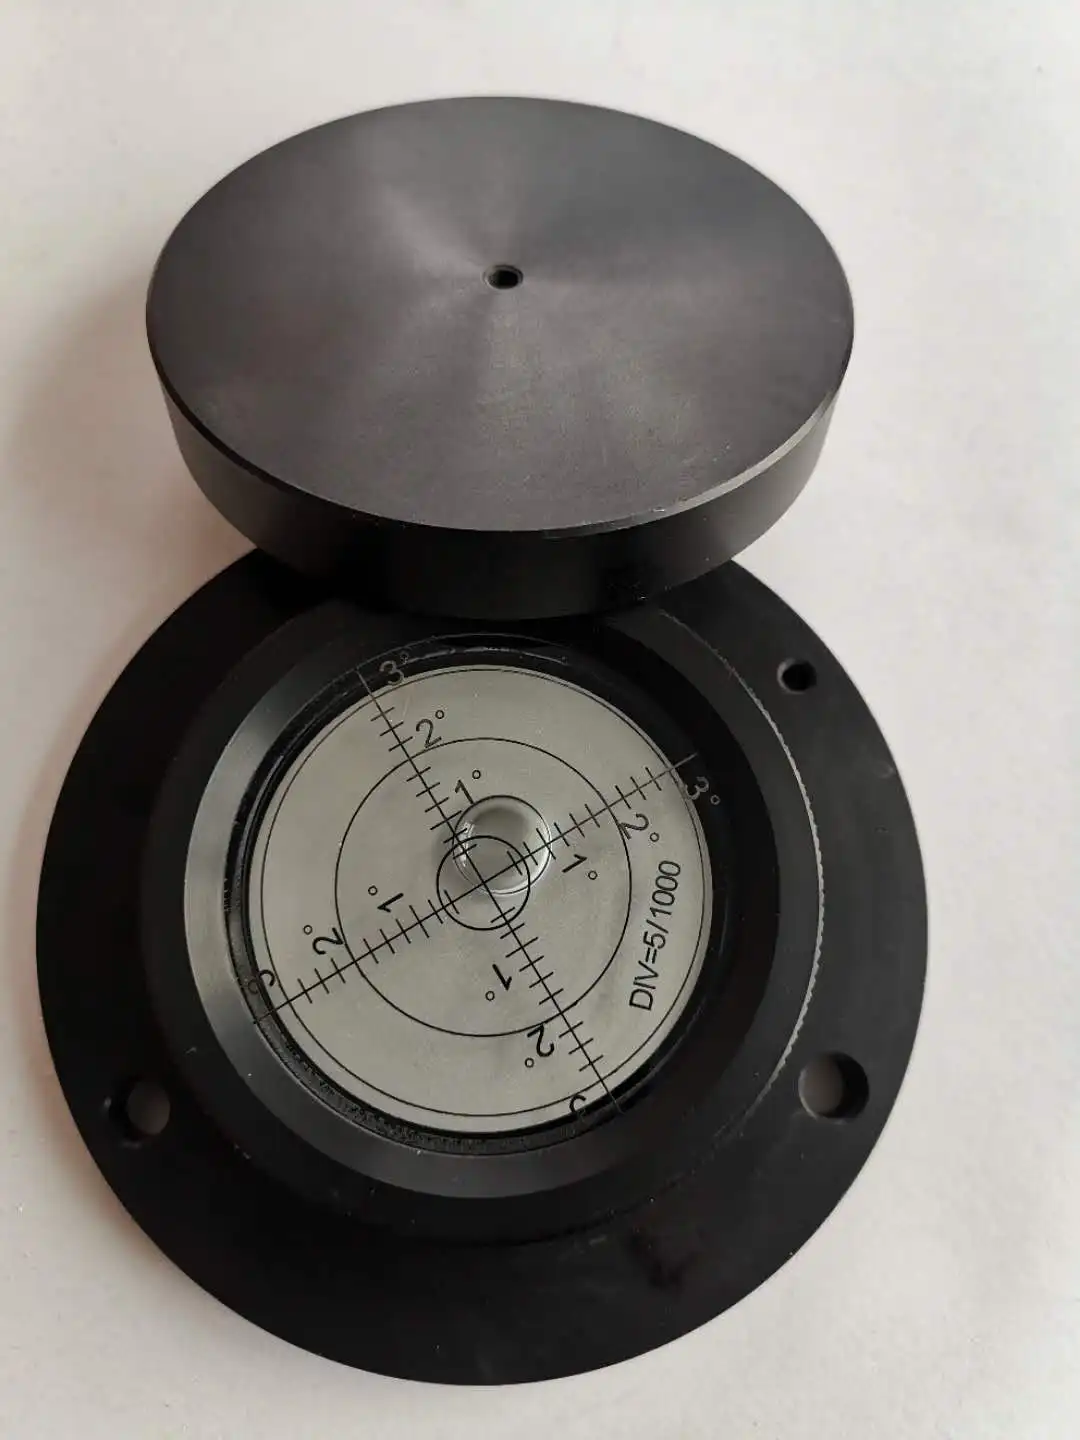 $ 60x12mm Precision Disque Rond Circulaire Niveau à bulle Outil de mesure Cadeau $ 